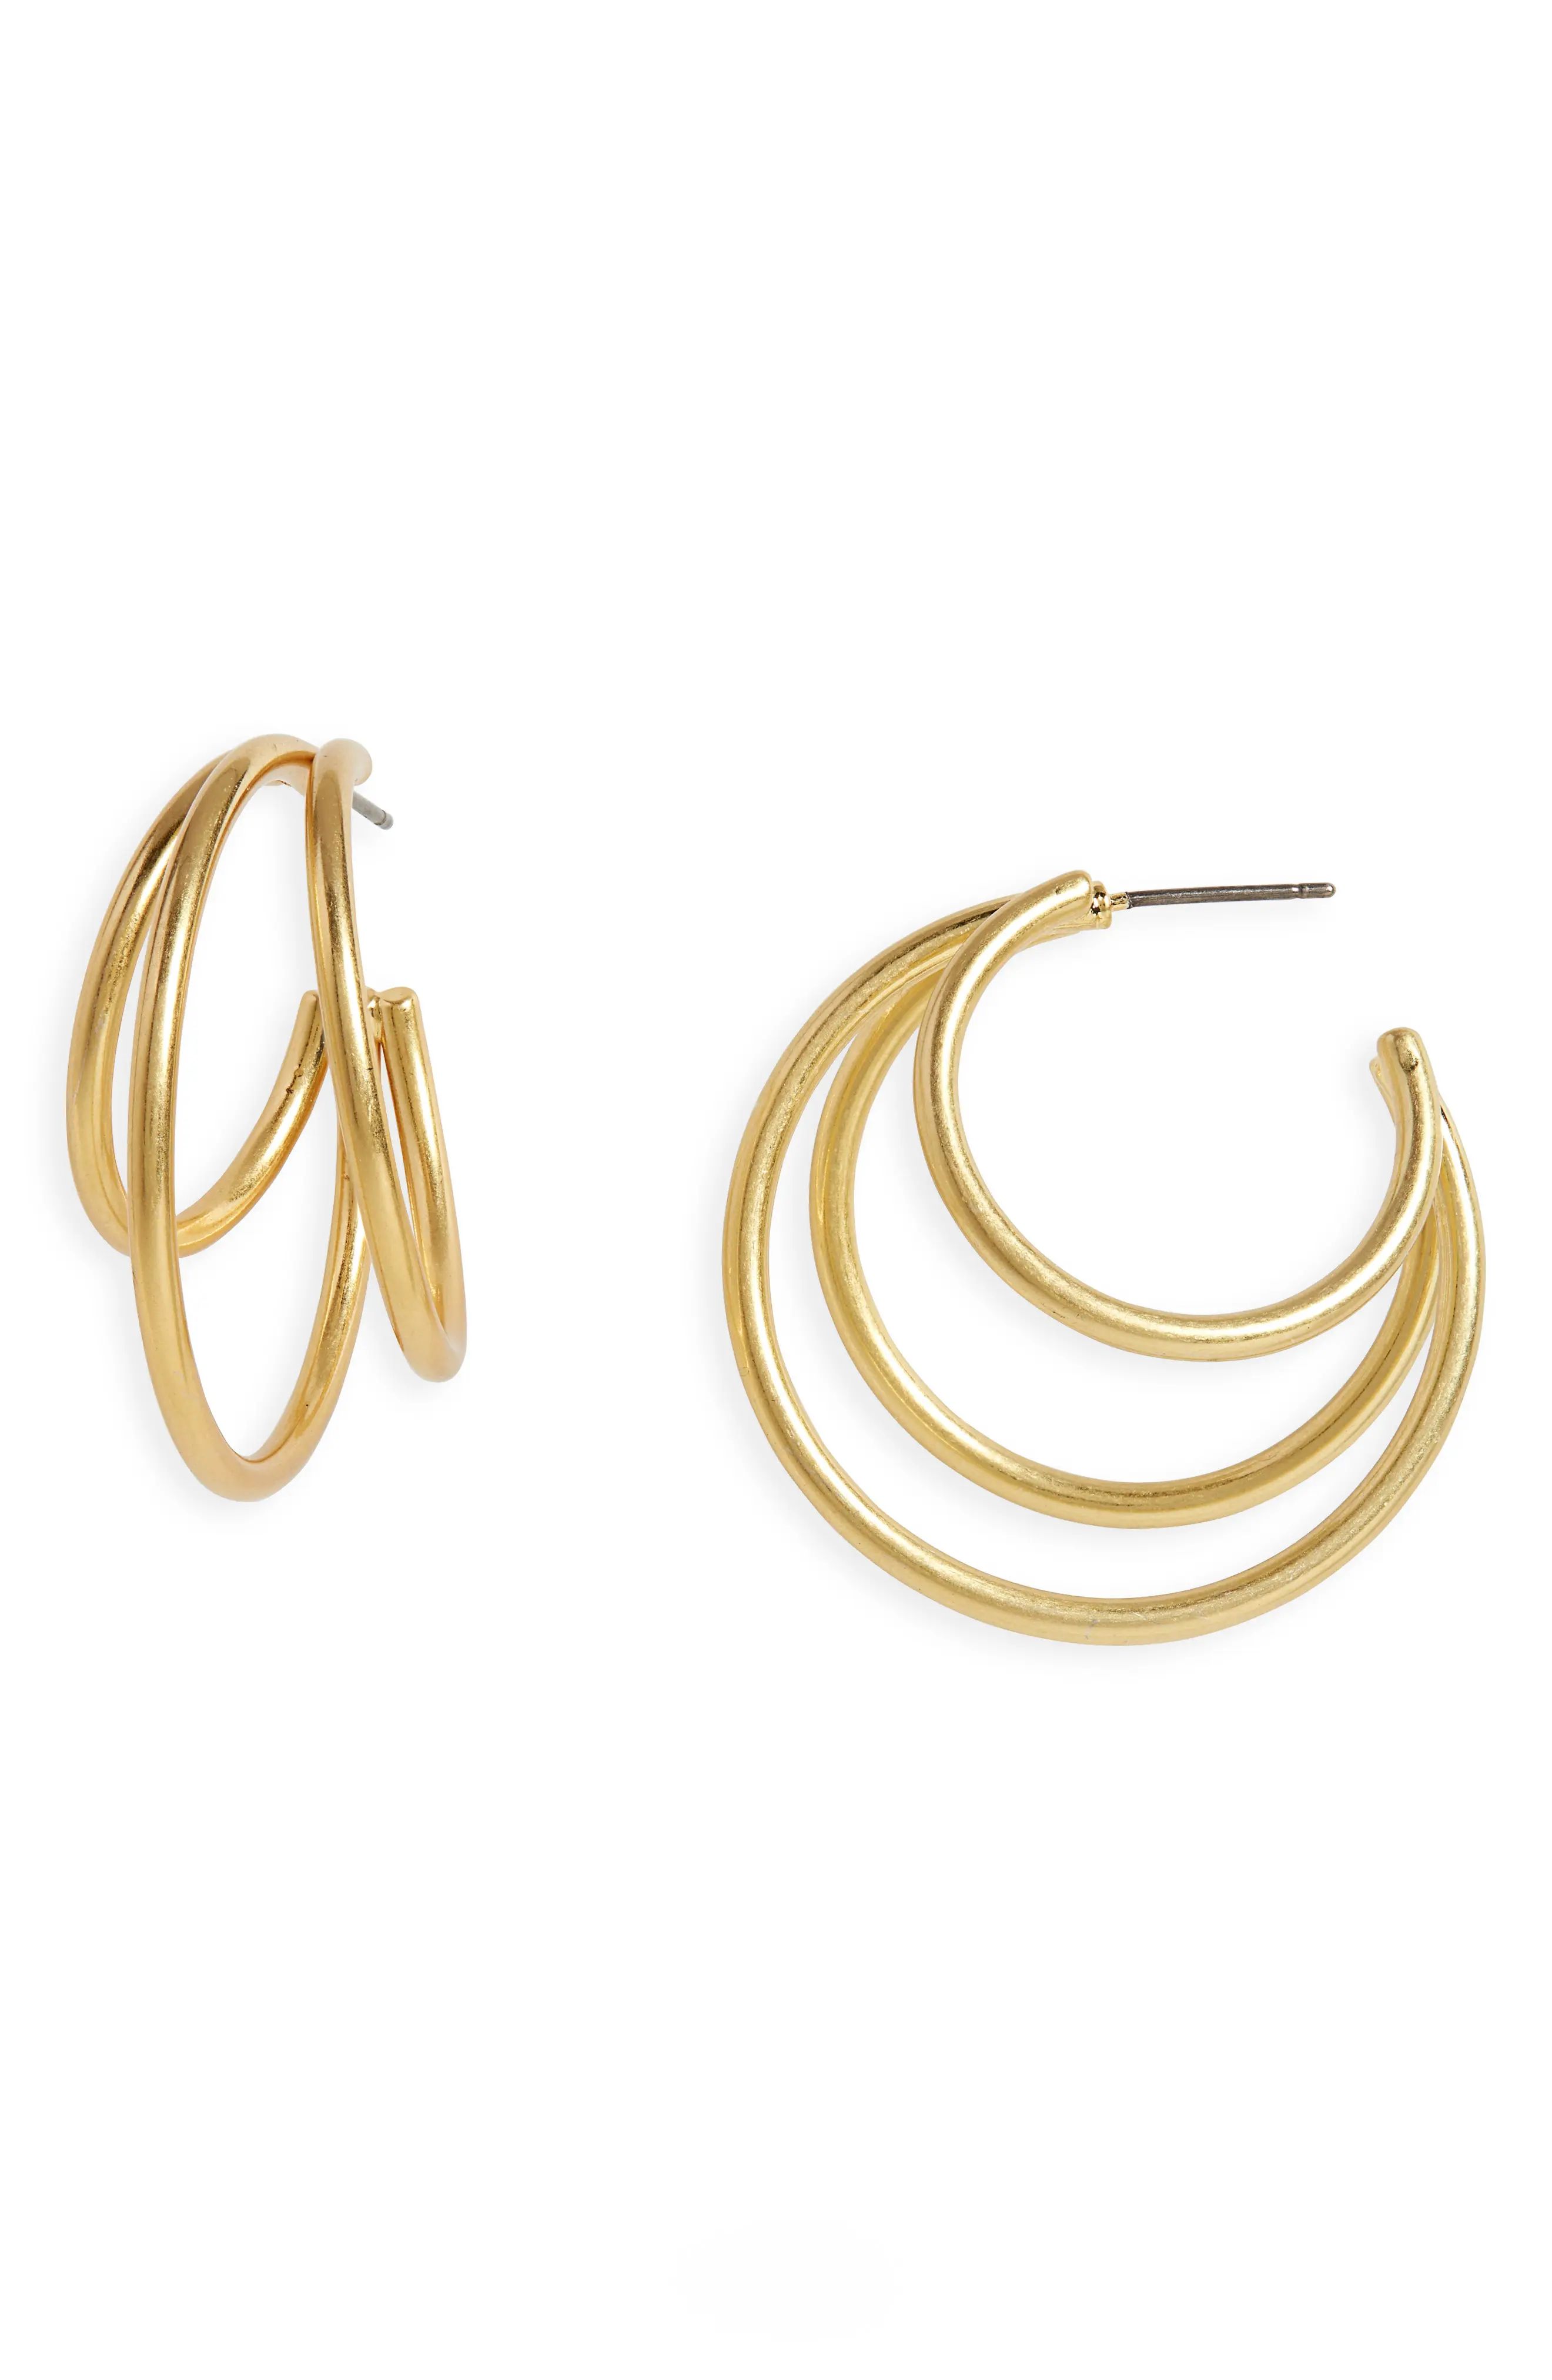 Madewell Triplet Hoop Earrings in Vintage Gold at Nordstrom | Nordstrom